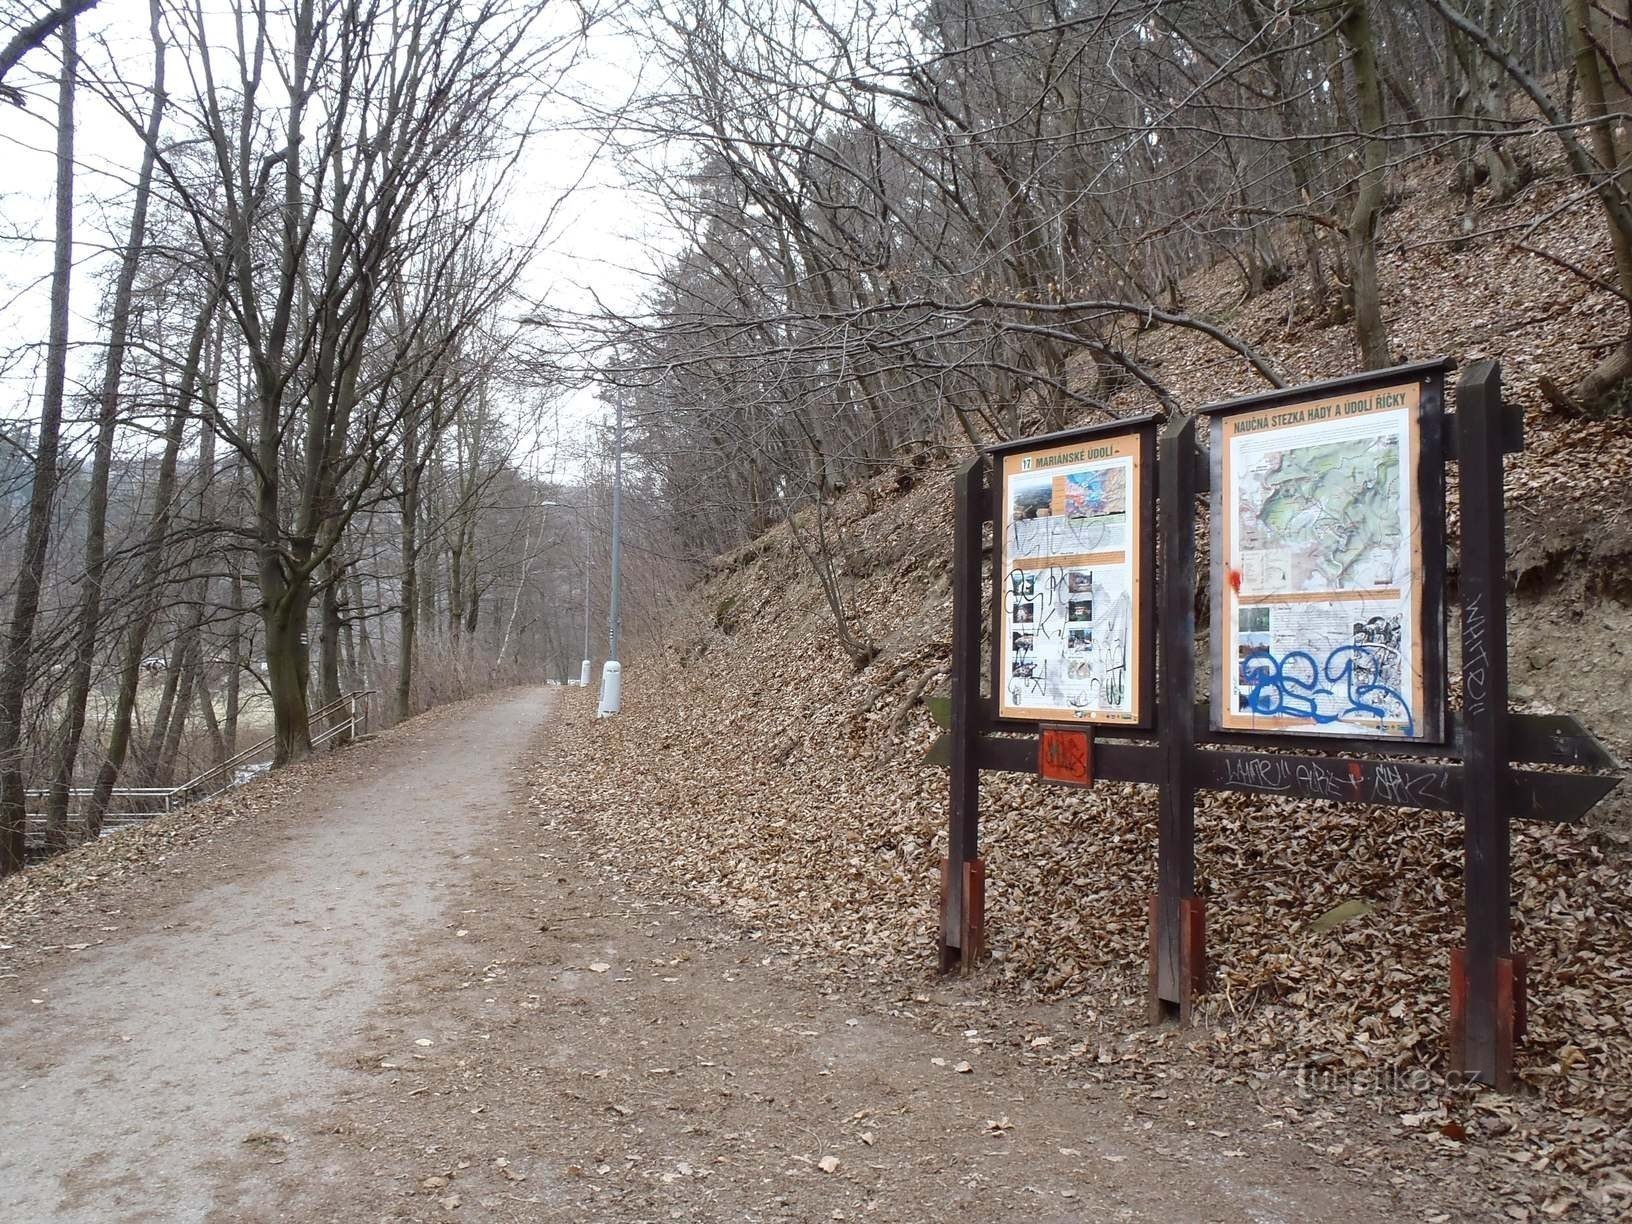 Jena fra stierne til Mariánské údolí (blåt og rødt skilt) - 6.2.2012. februar XNUMX